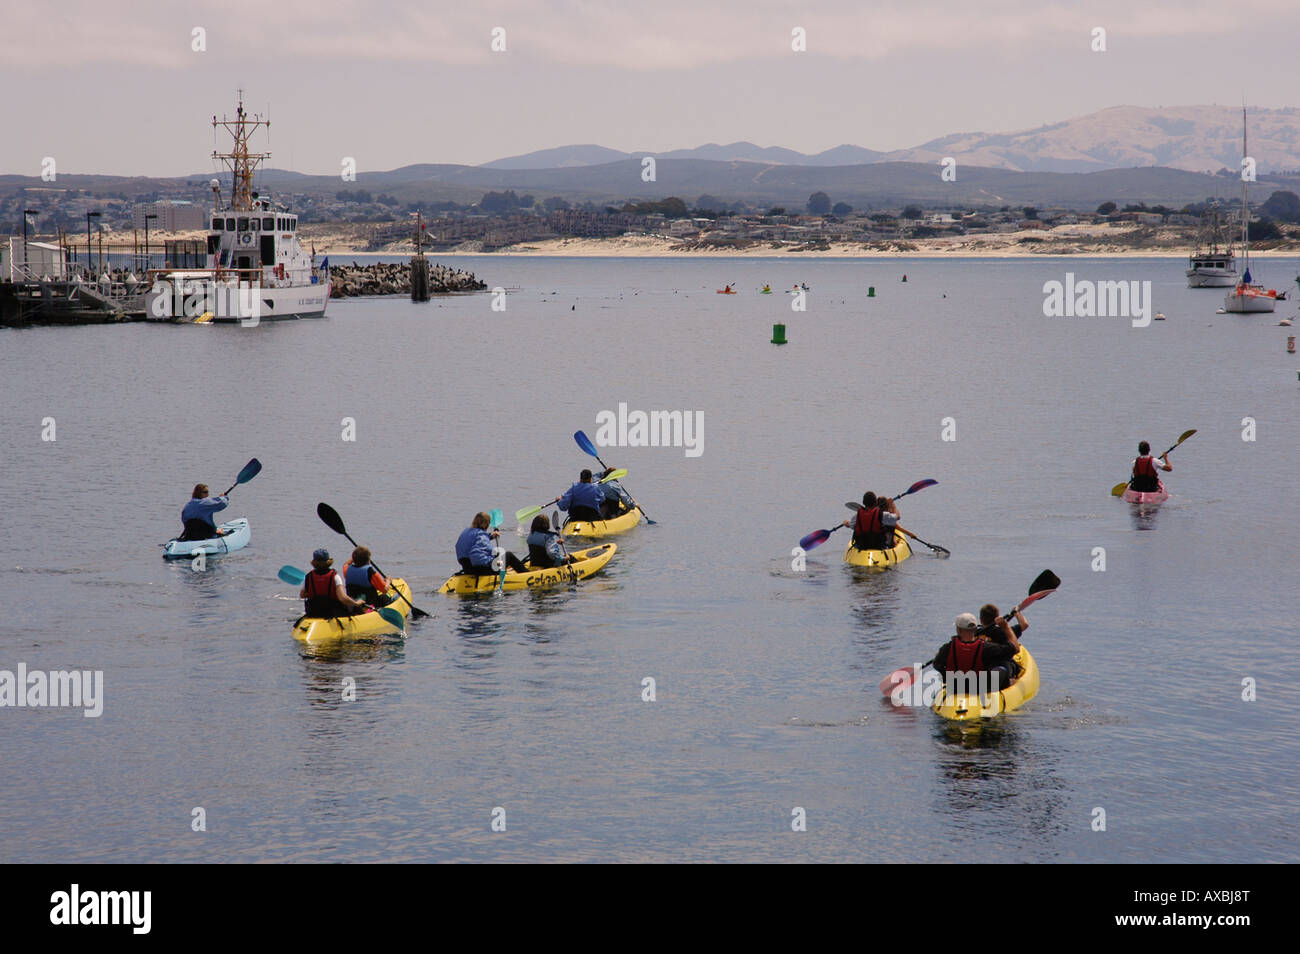 Groupe de personnes sur kayak Monterey California USA Banque D'Images